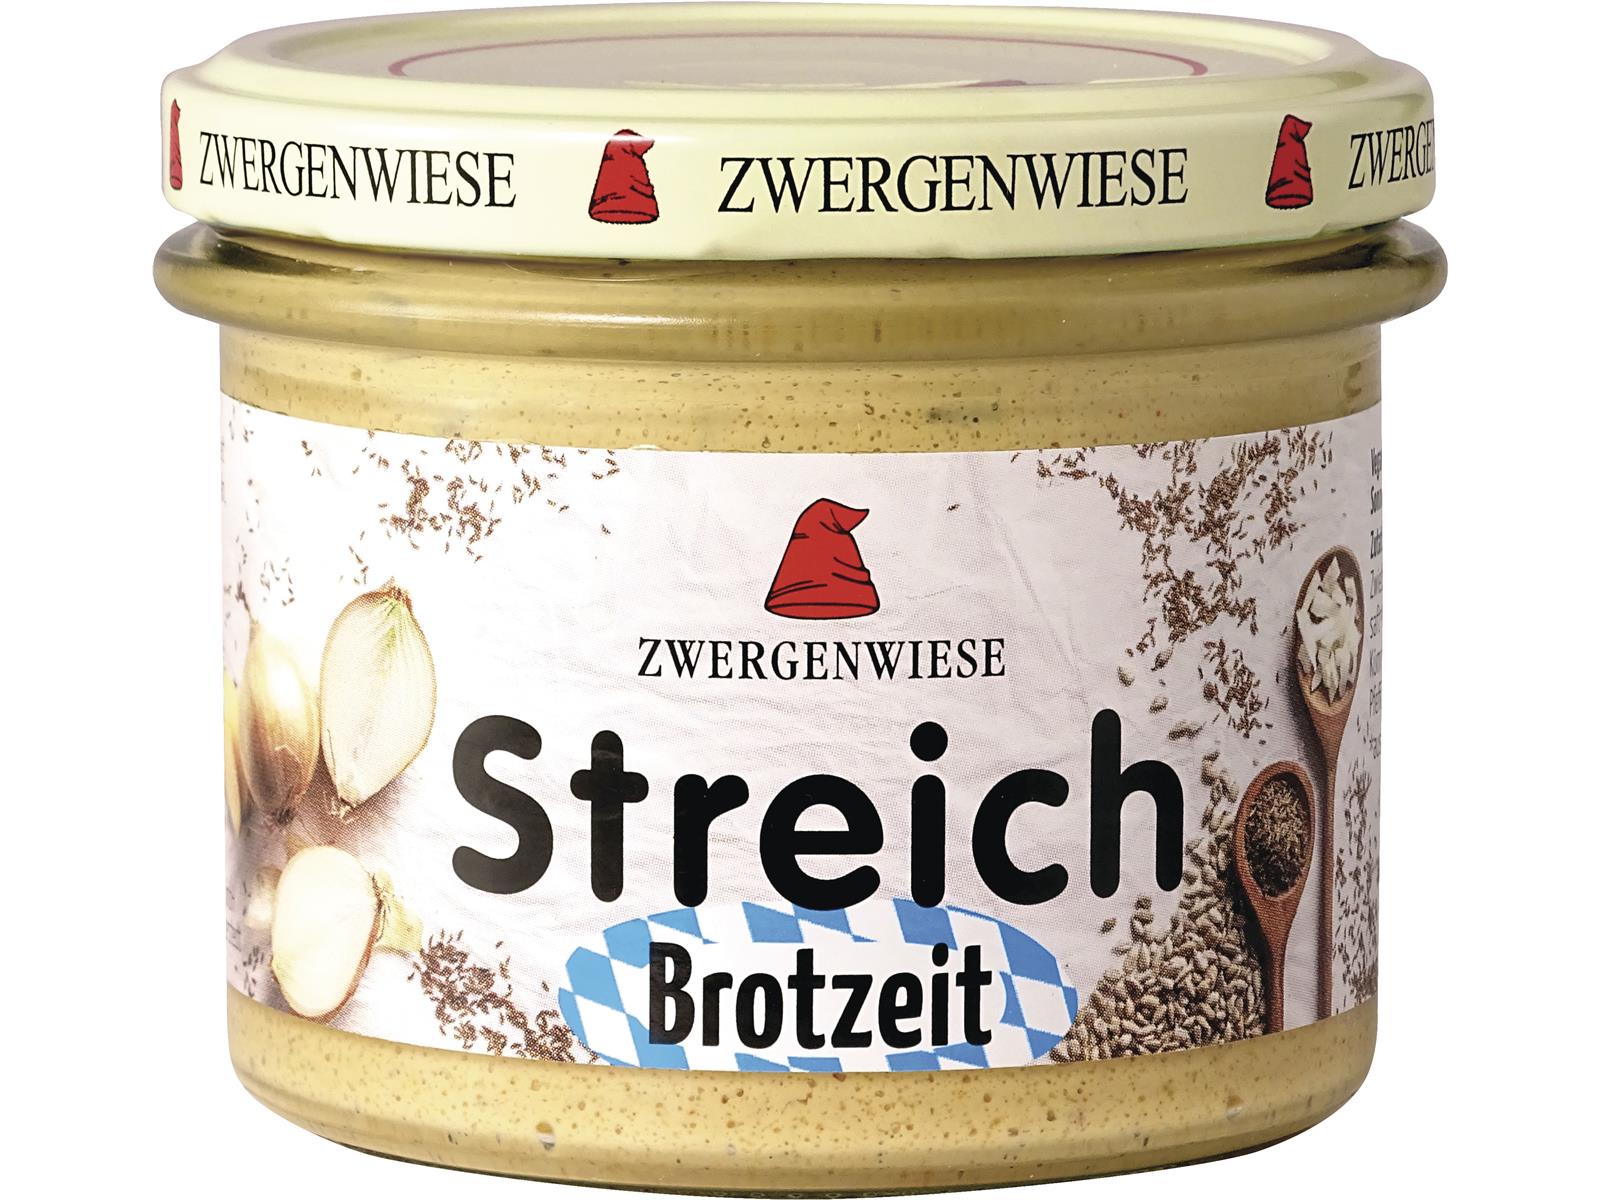 Zwergenwiese Brotzeit Streich 180 g